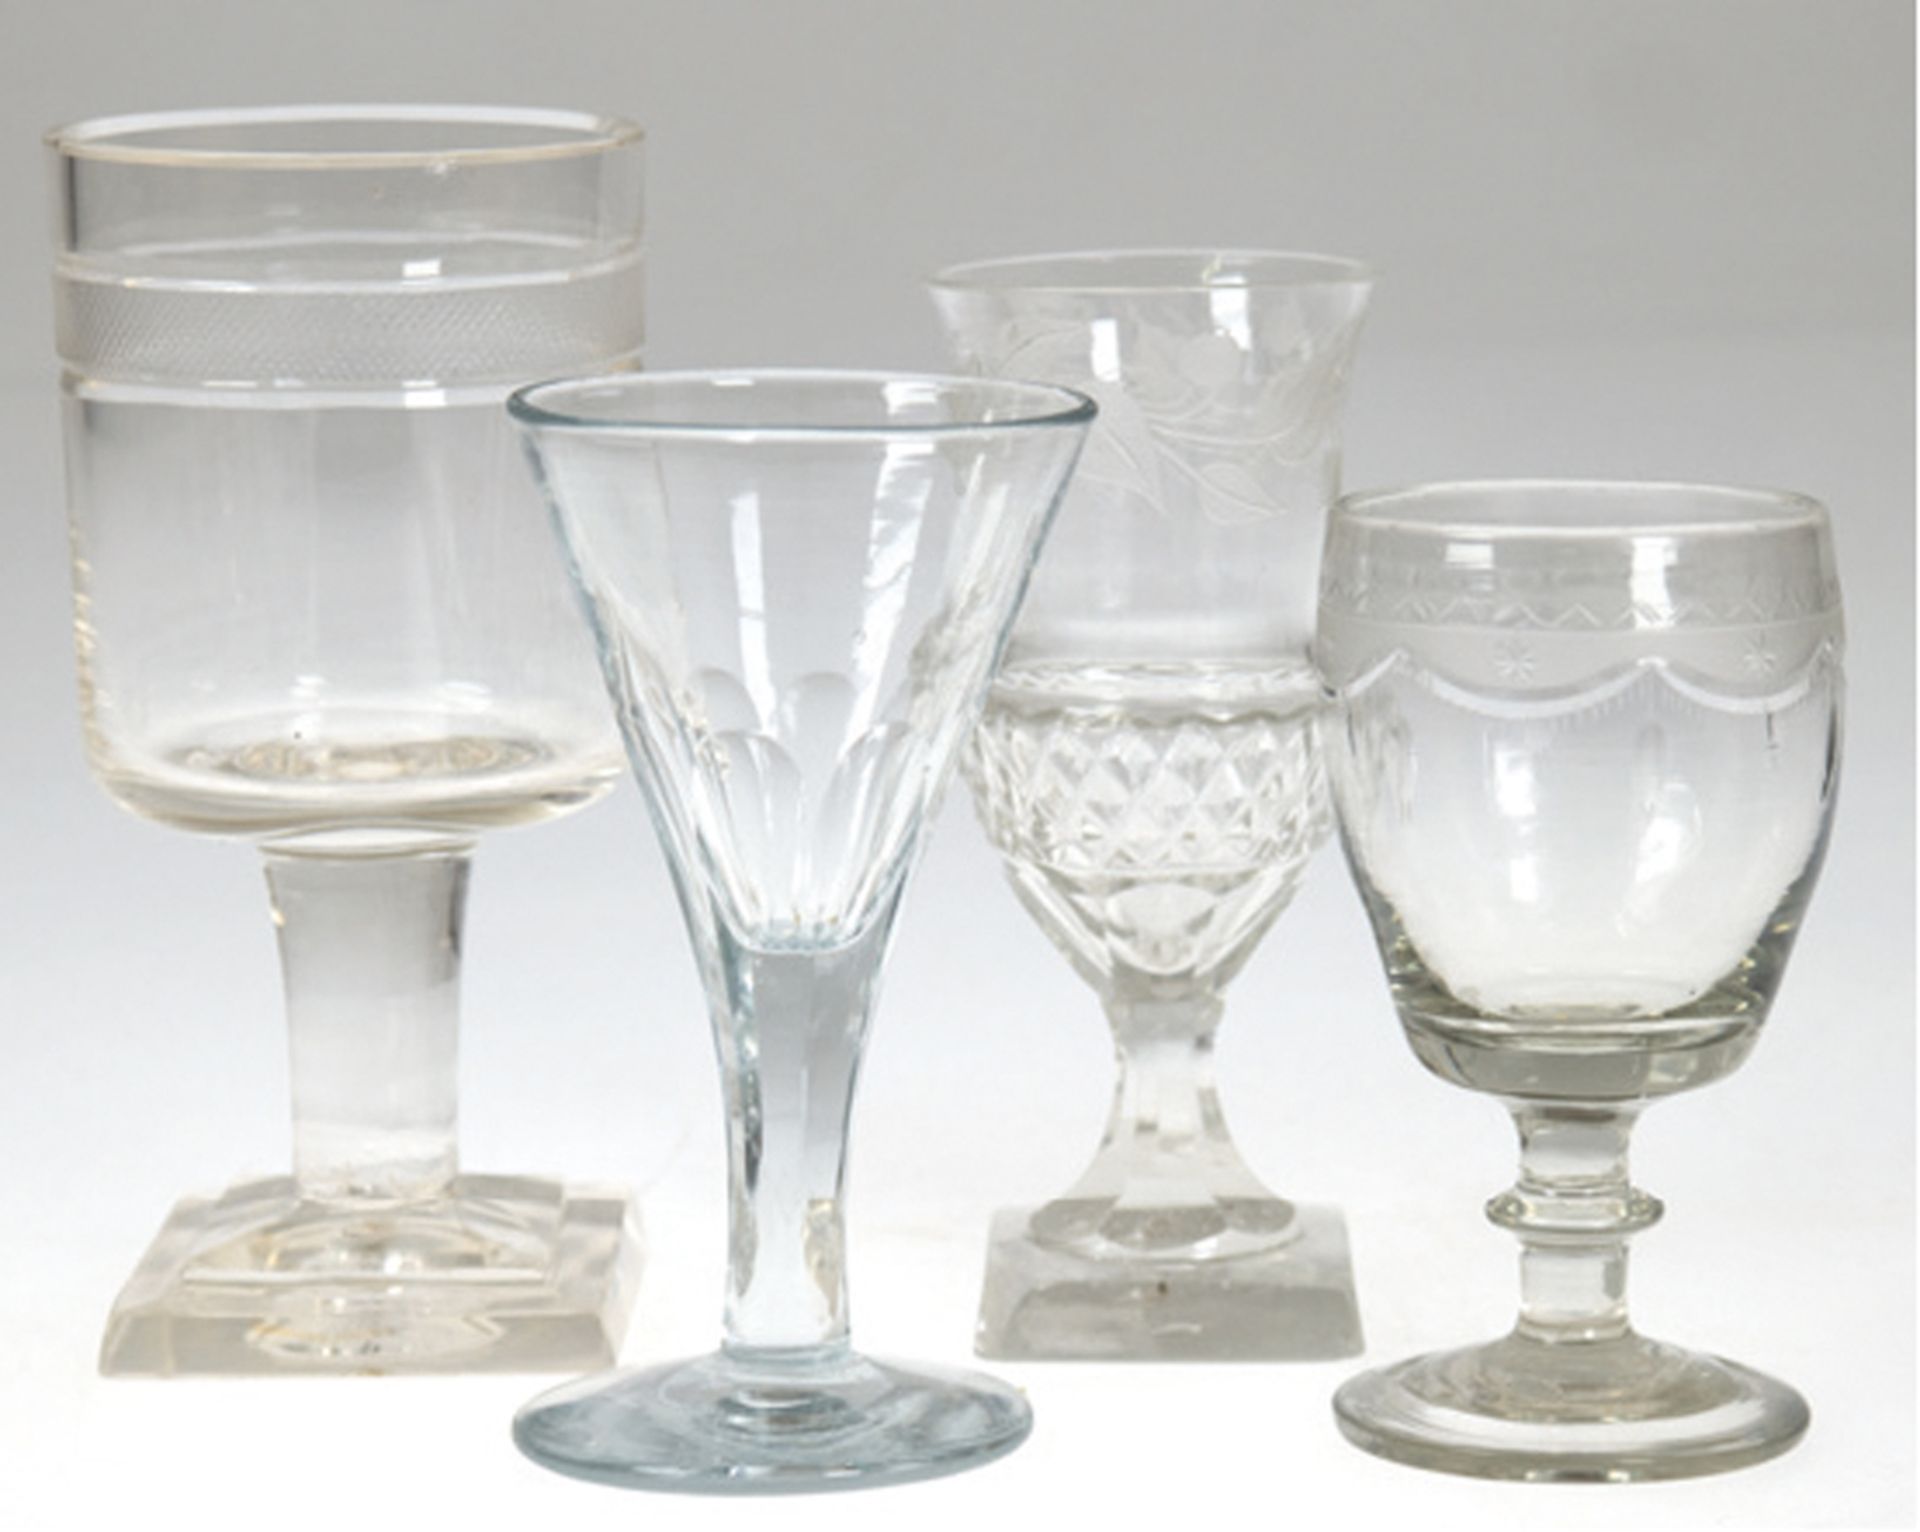 4 Empire/ Biedermeier-Gläser, div. Dekore, 2 mit quadratischem Stand, teilweise best., H. 10-14 cm